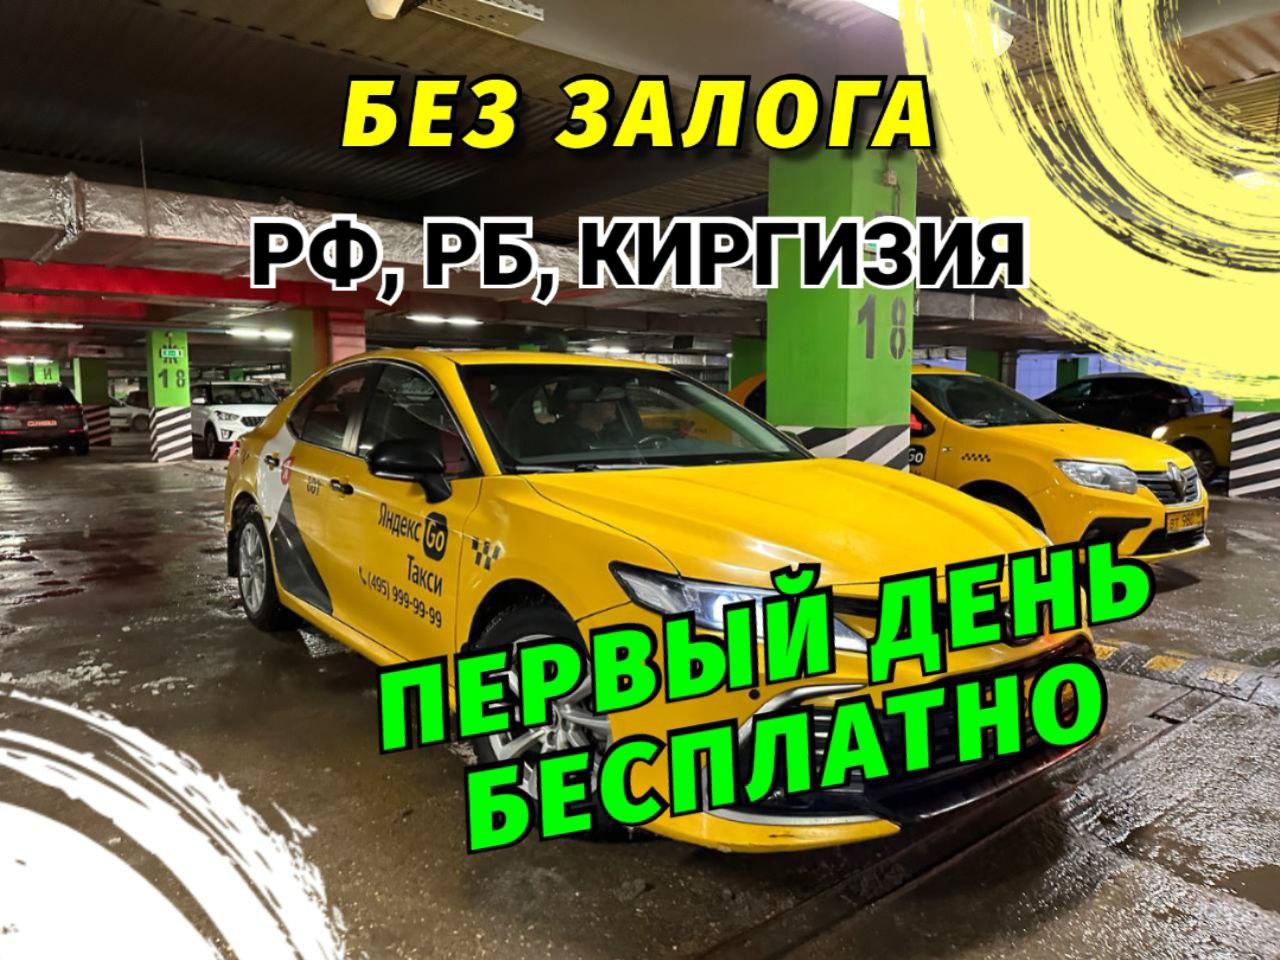 Аренда авто под такси без залога. Москва